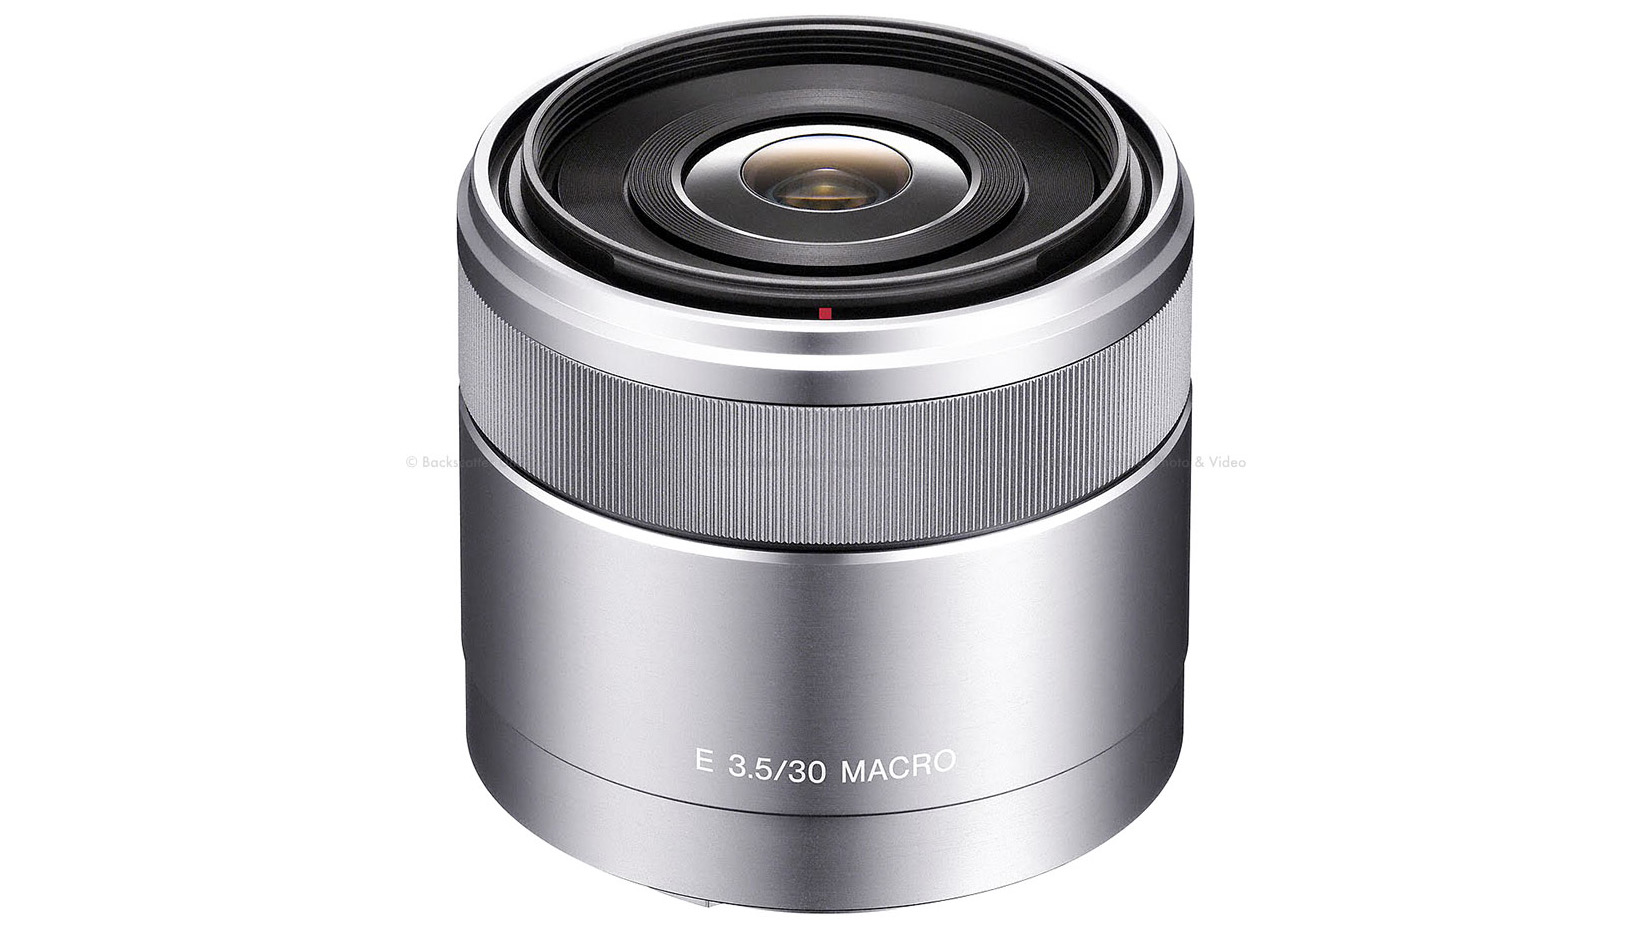 Best Sony lens: Sony E 30mm f/3.5 Macro